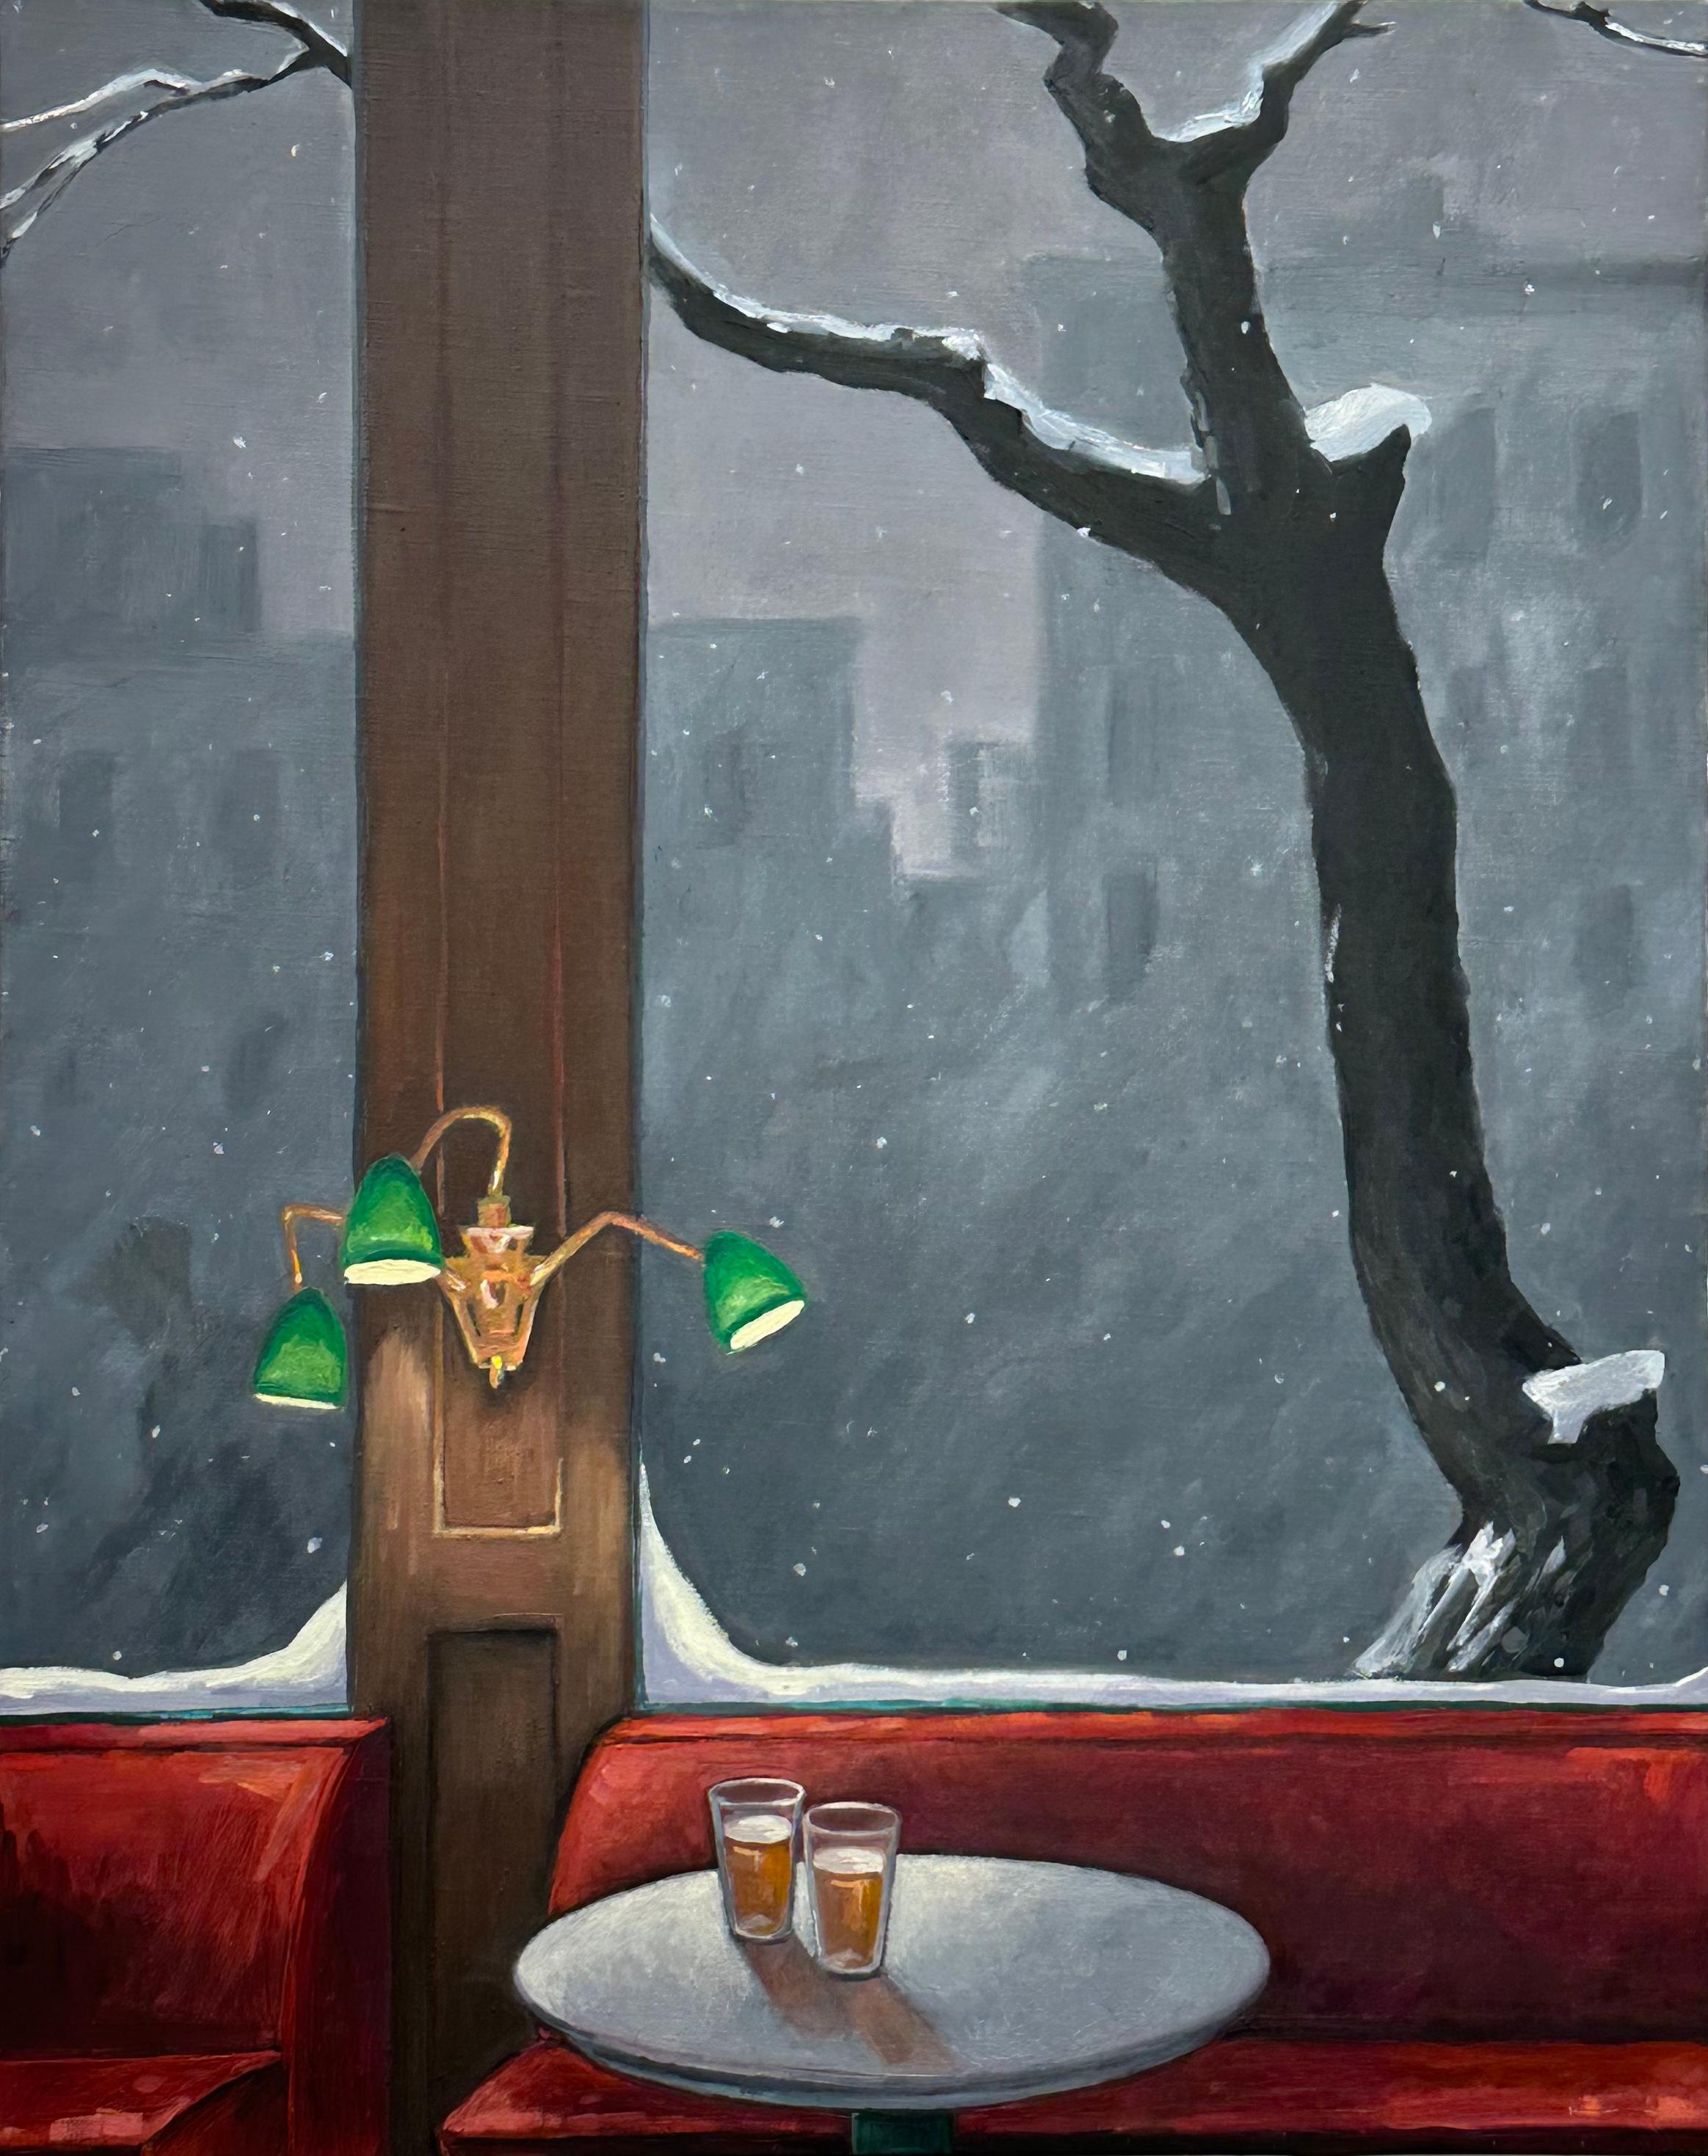 Still-Life Painting KK Kozik - Deux bières, lampes vertes, rouge foncé, verres, neige à l'extérieur, nature morte de bar en hiver